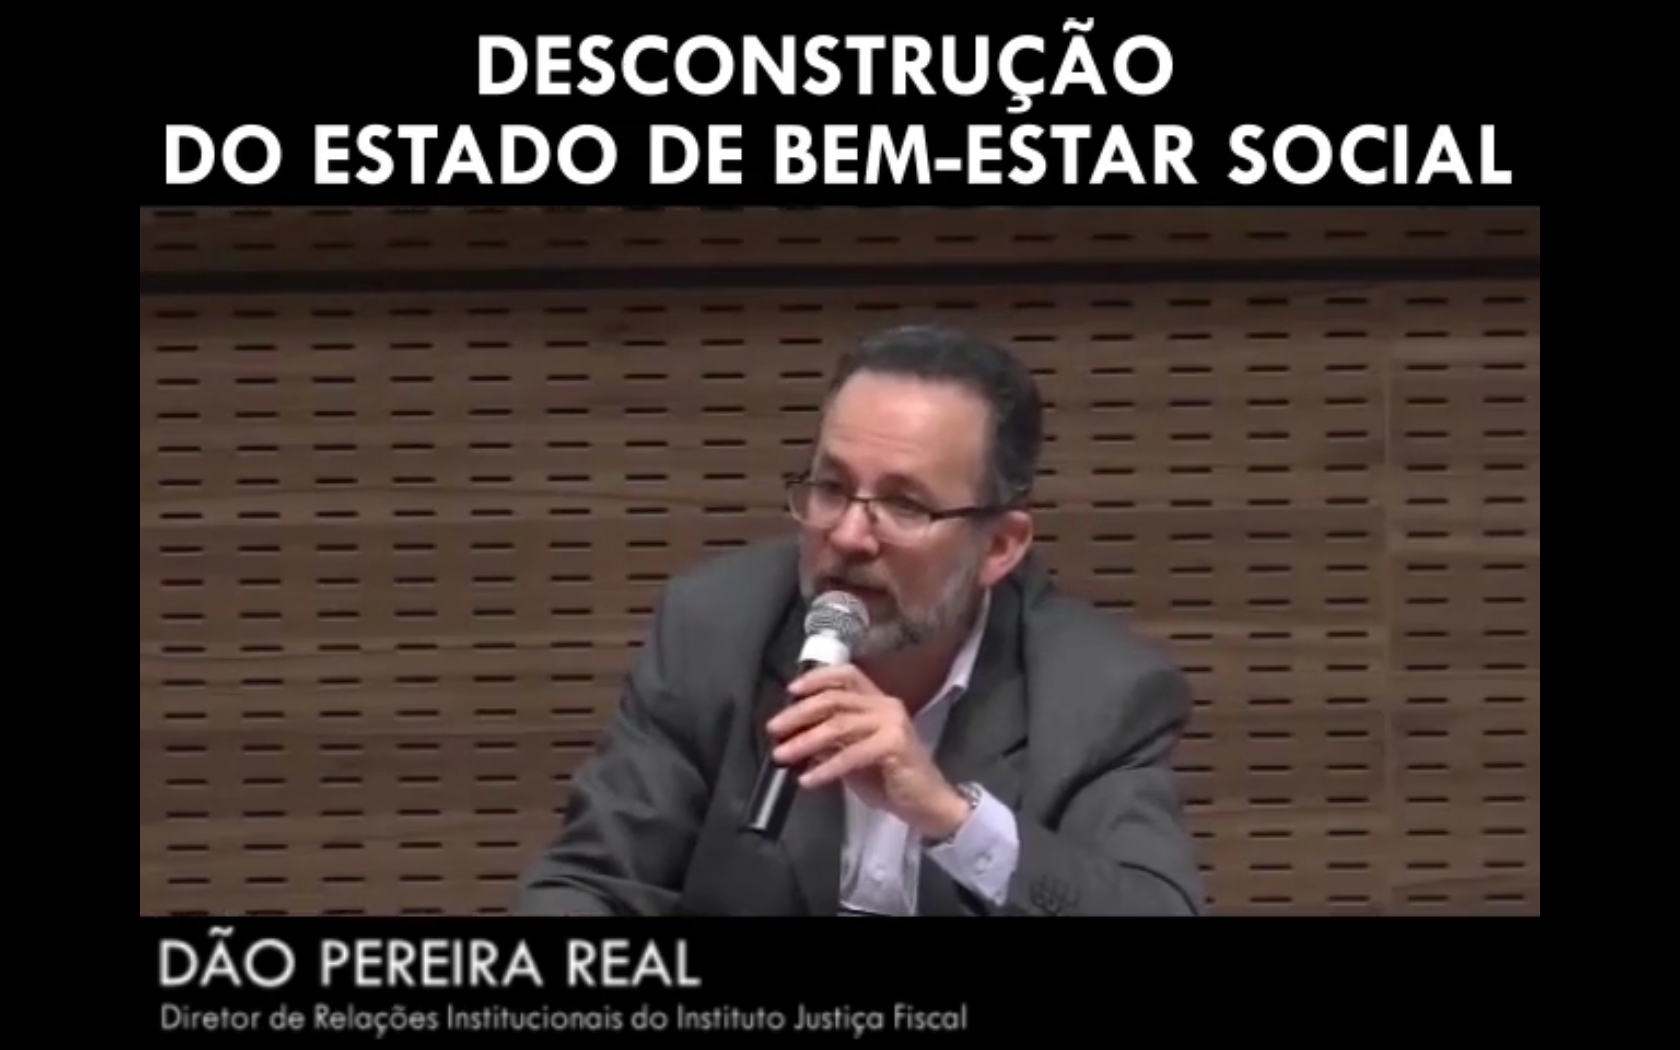 Desconstrução do estado de bem-estar social - Dão Pereira Real